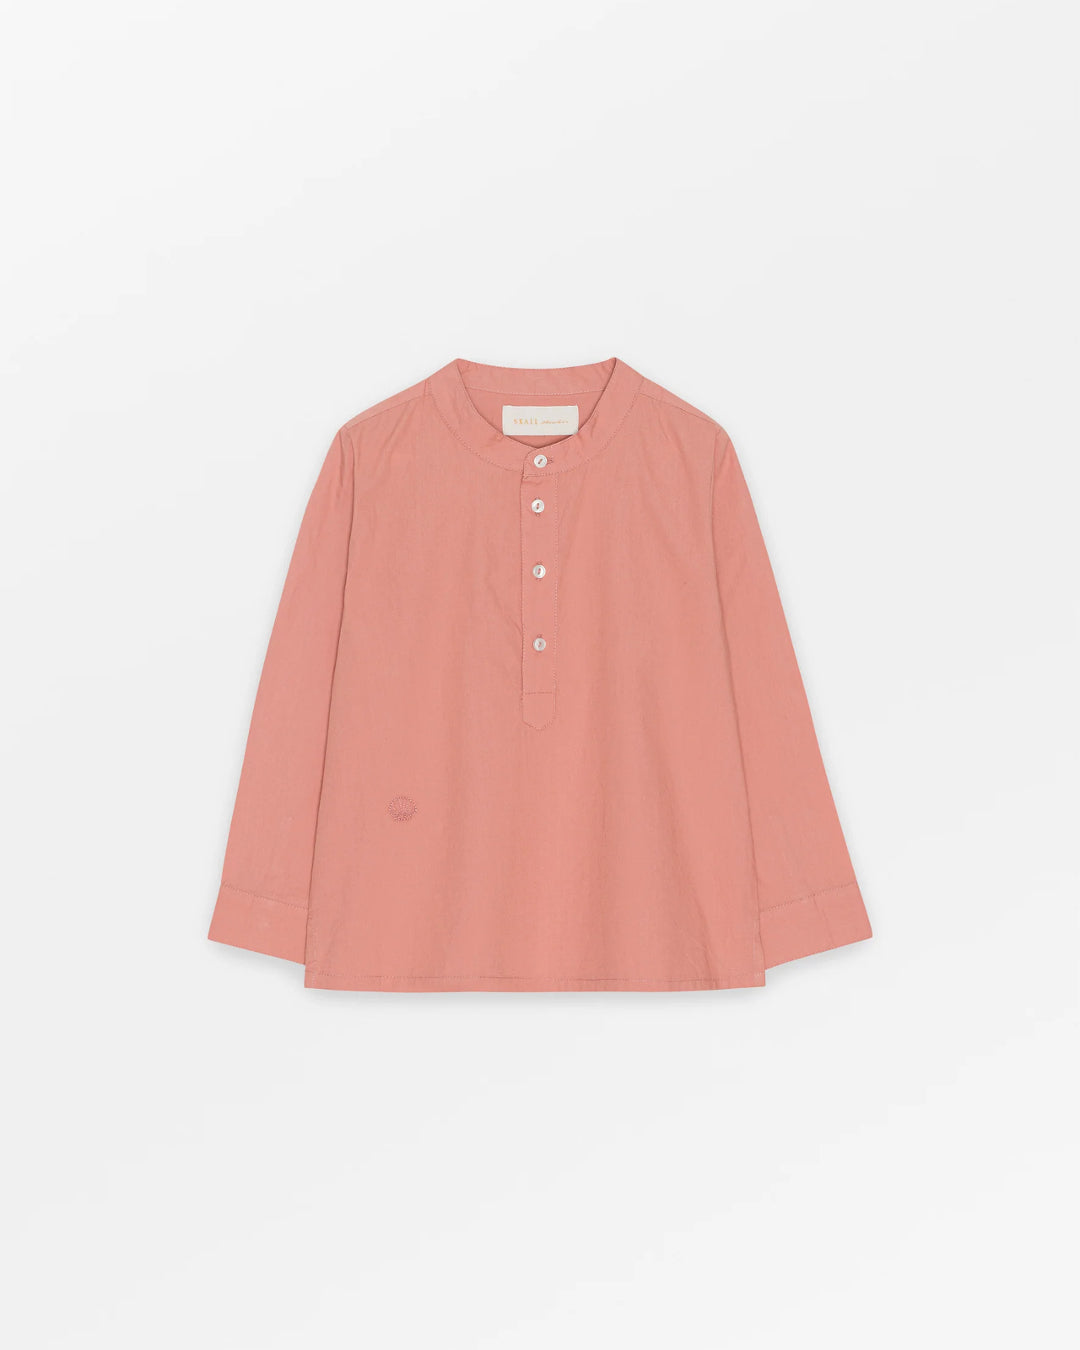 Lucca skjorte | Musling | Støvet Rosa